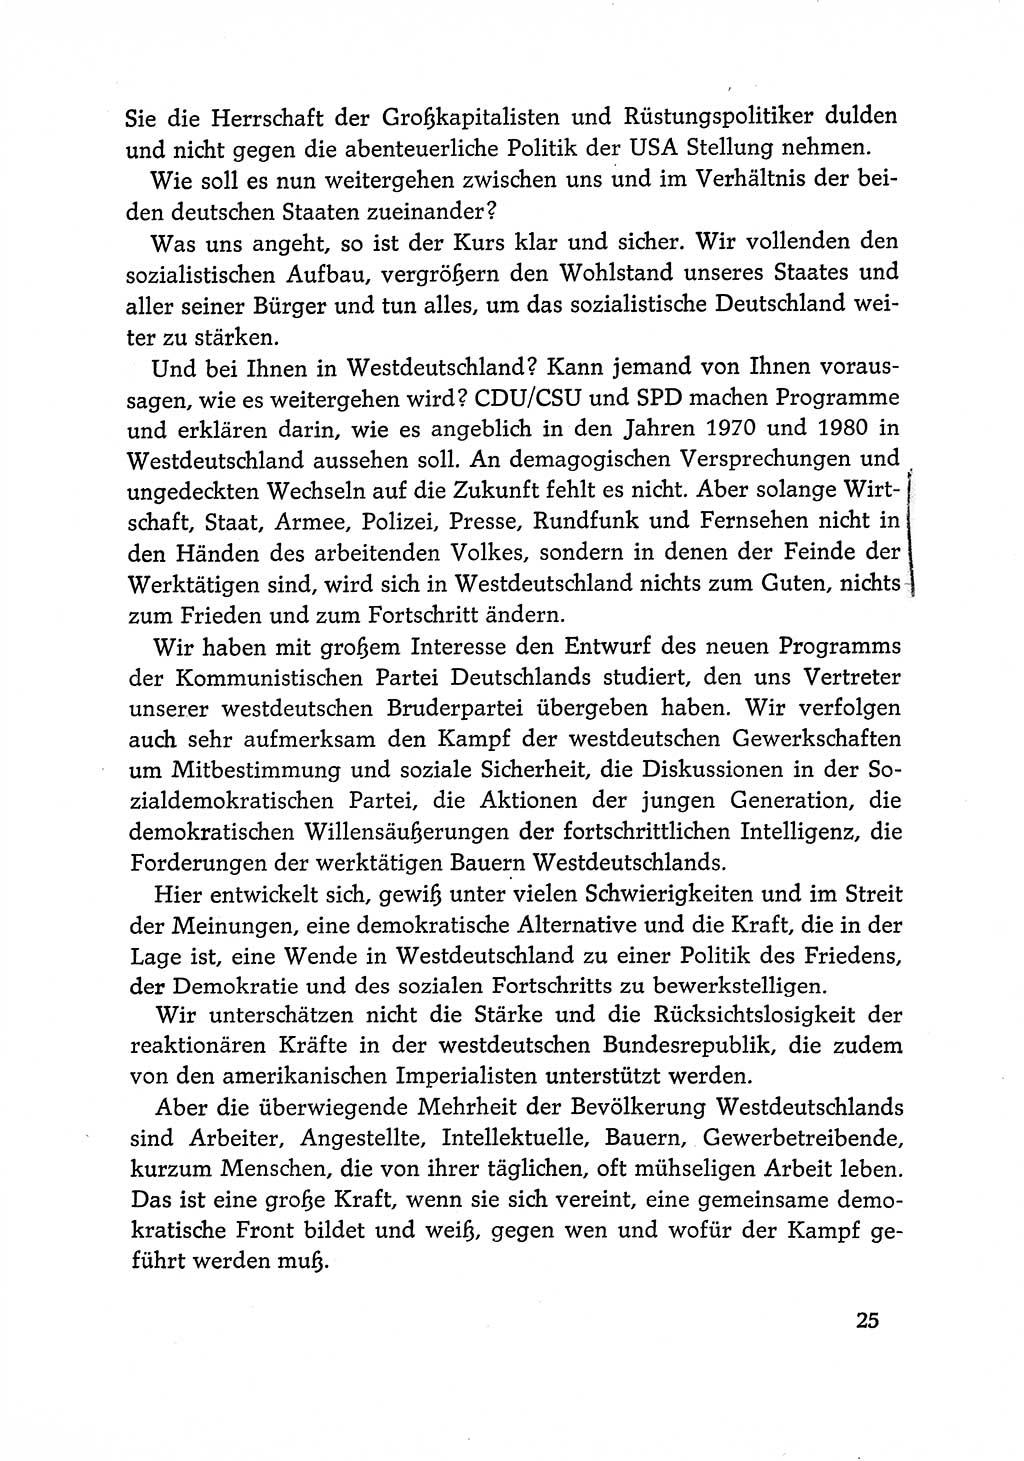 Dokumente der Sozialistischen Einheitspartei Deutschlands (SED) [Deutsche Demokratische Republik (DDR)] 1968-1969, Seite 25 (Dok. SED DDR 1968-1969, S. 25)